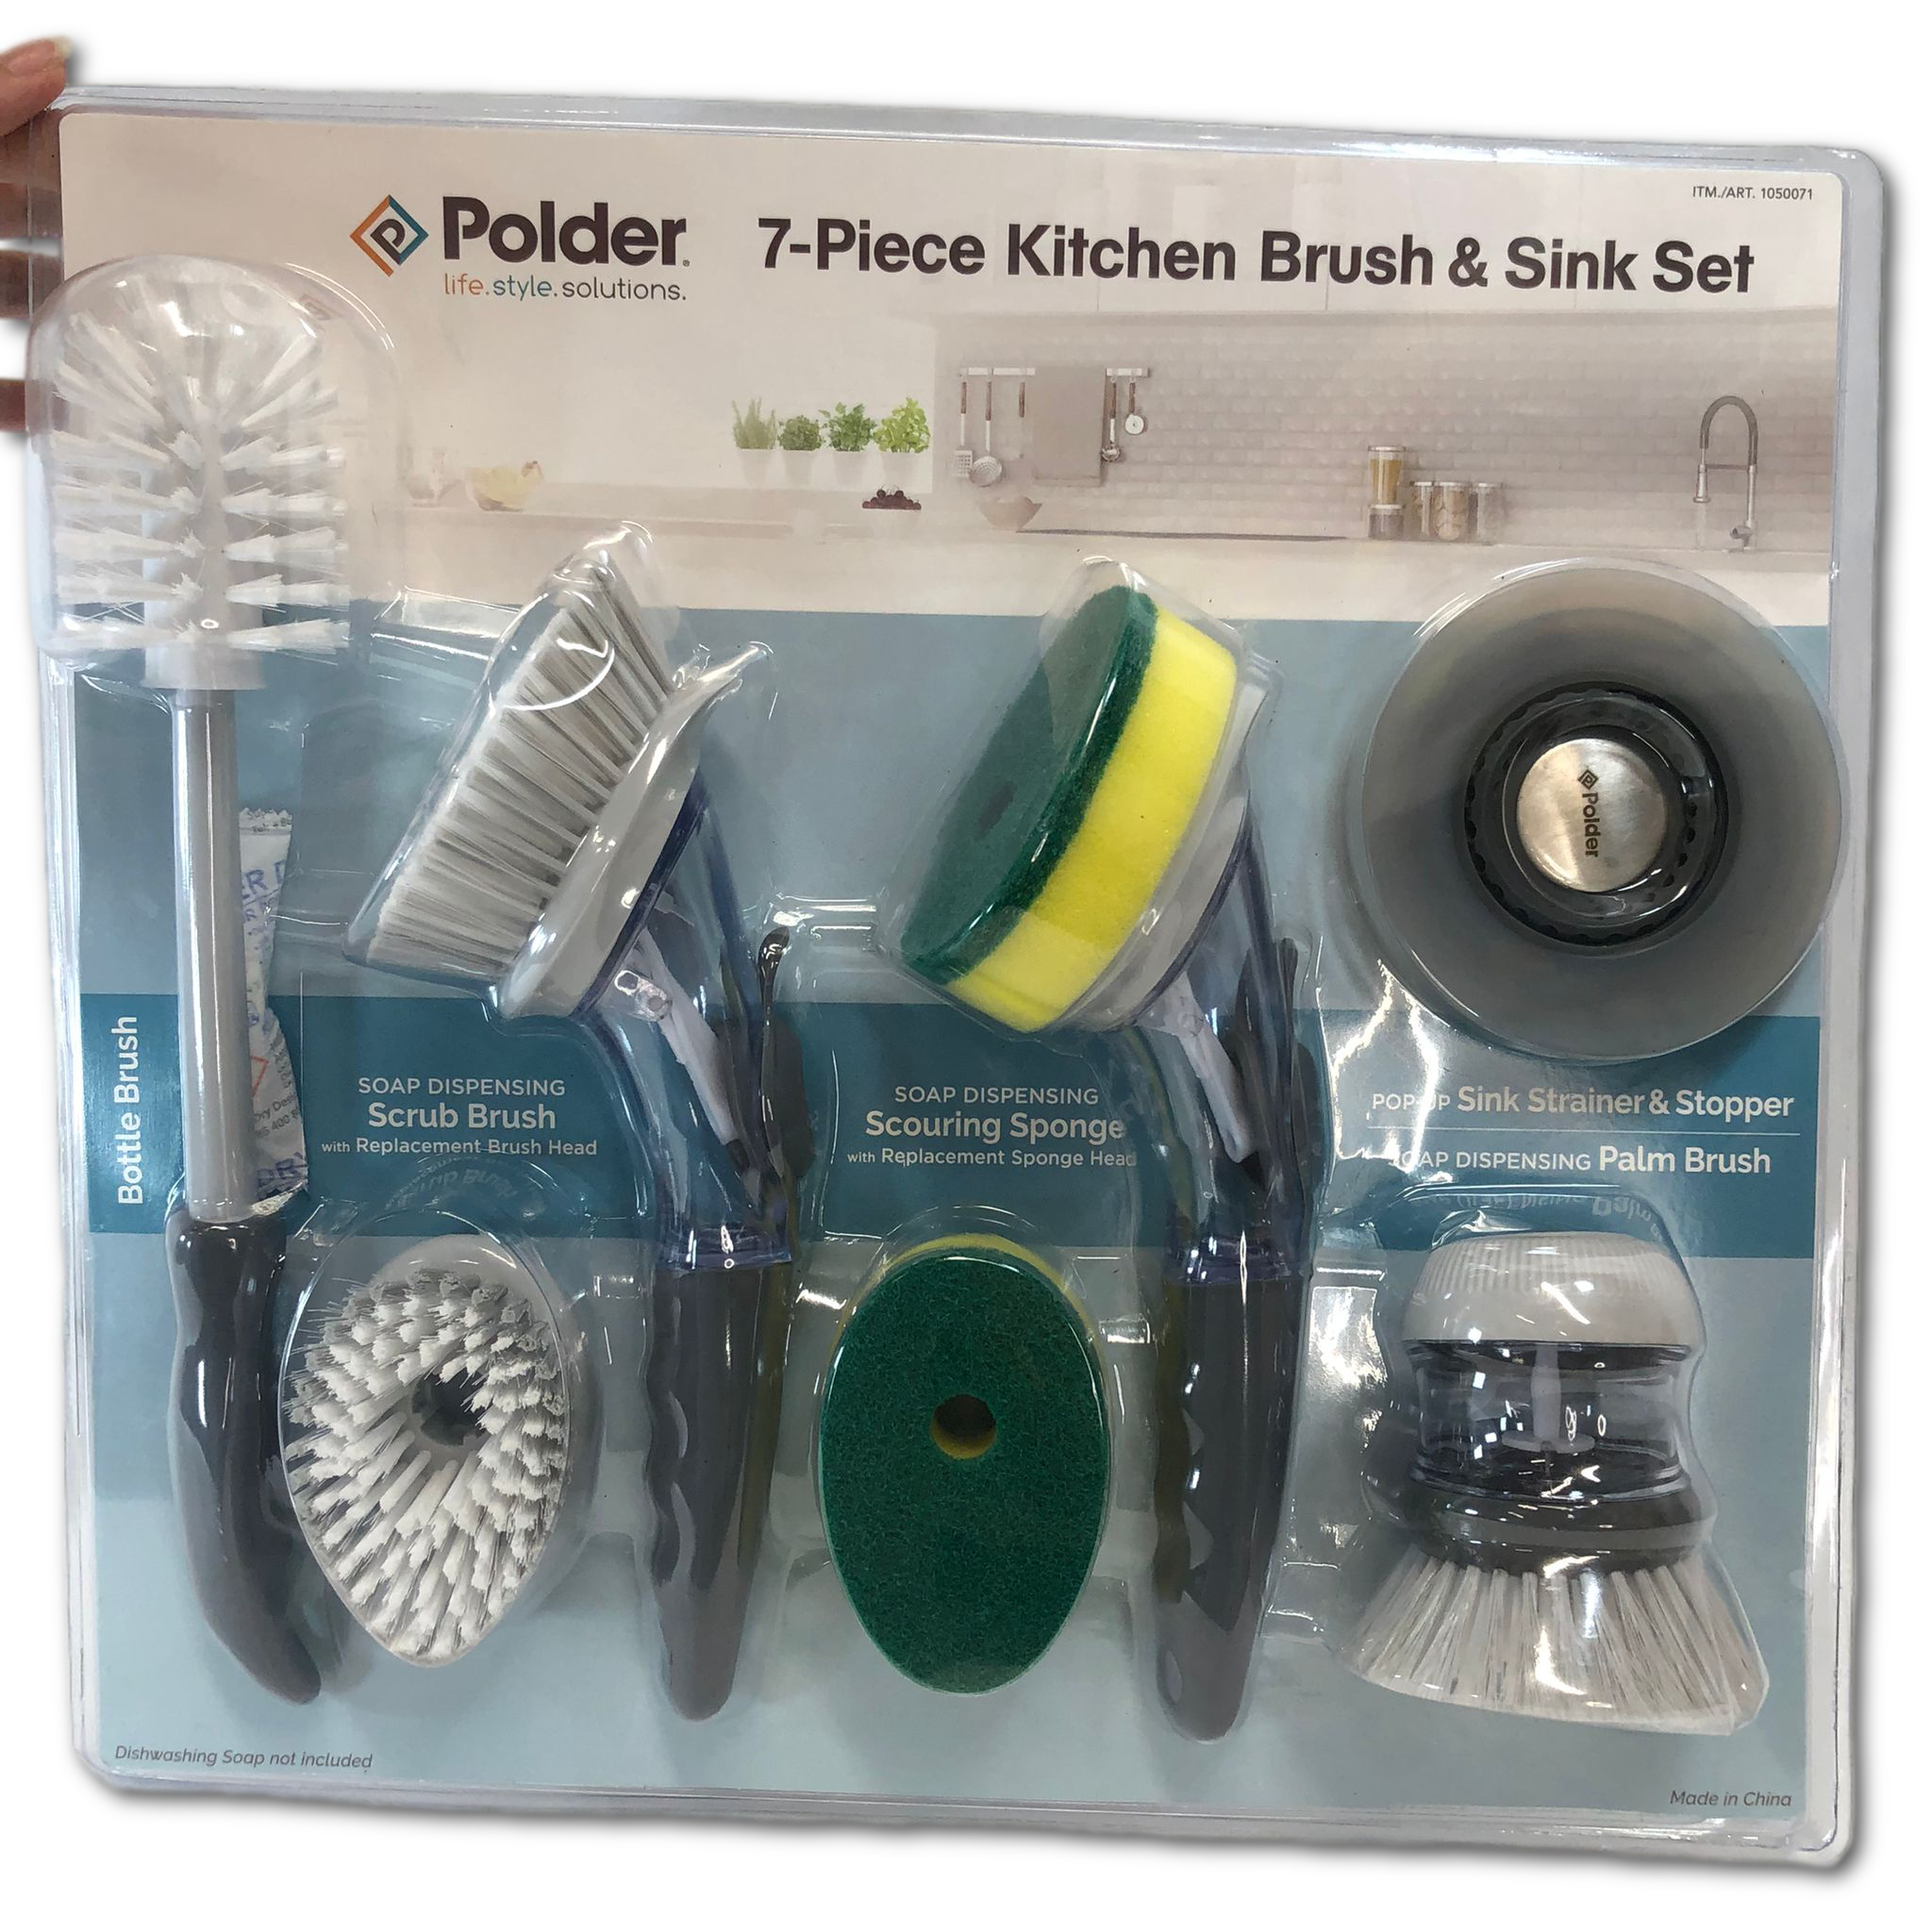 Polder 7-piece Kitchen Brush & Sink Set